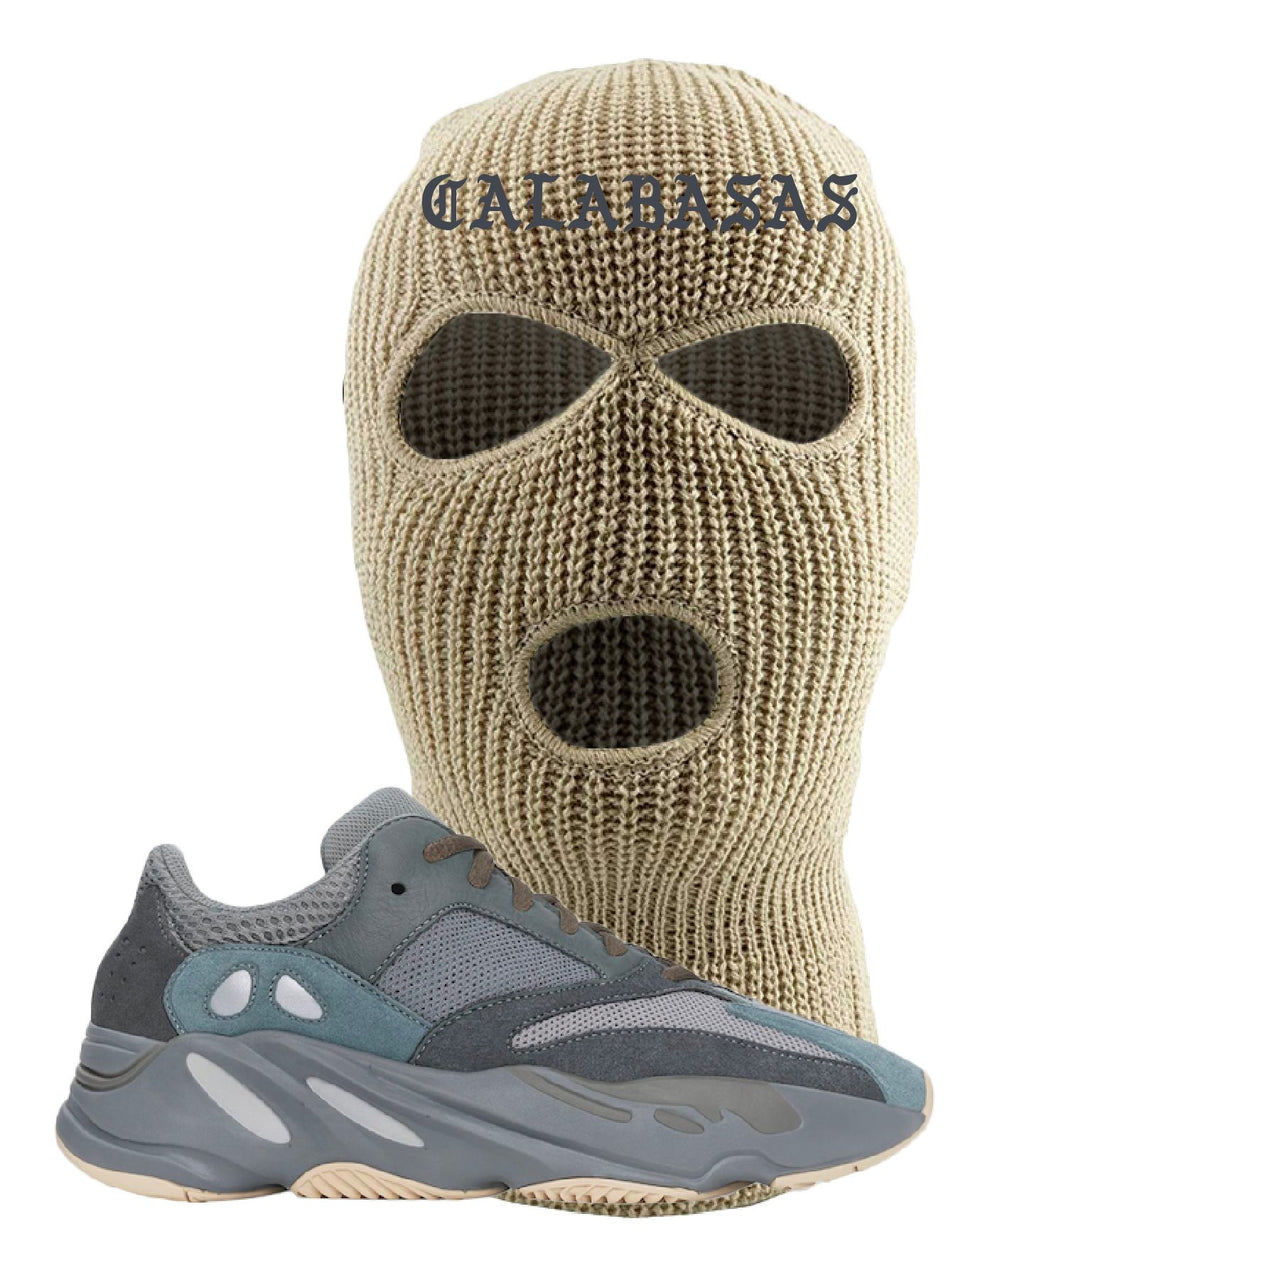 Yeezy Boost 700 Teal Blue Calabasas Khaki Sneaker Hook Up Ski Mask